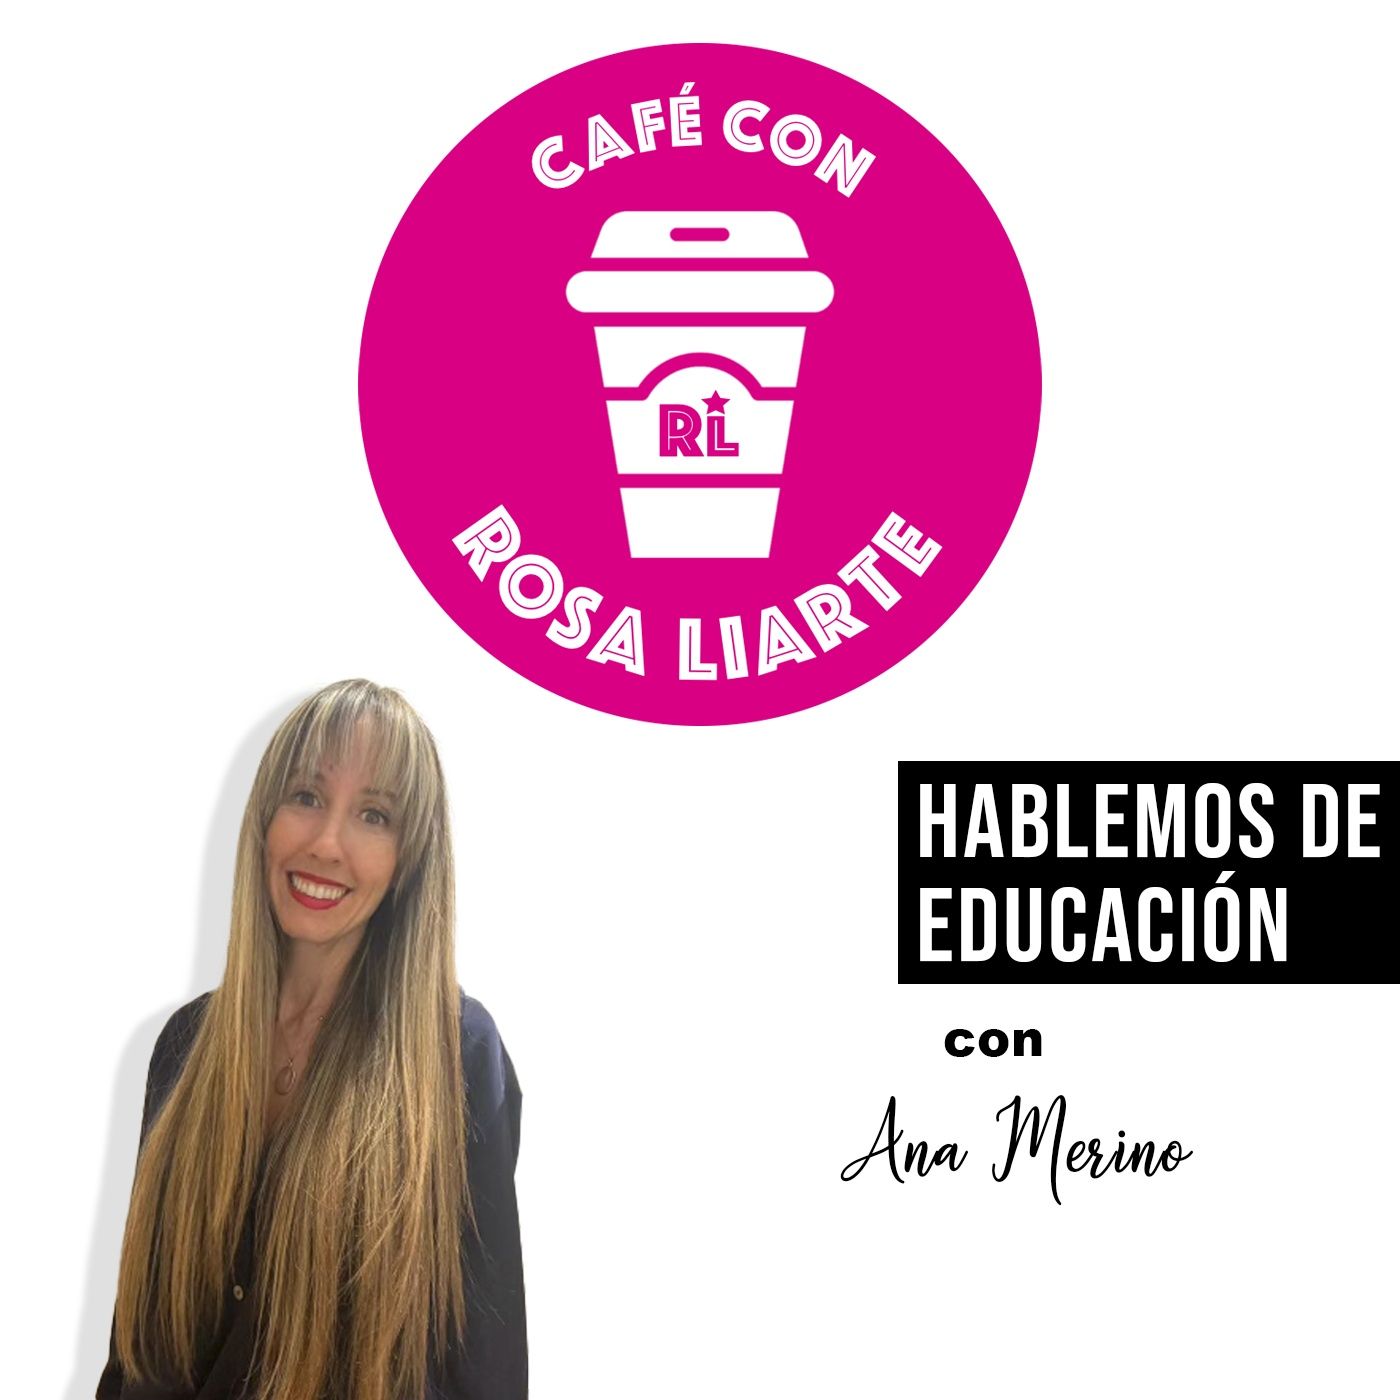 79. Ana Merino - "No hay educación sin coeducación"